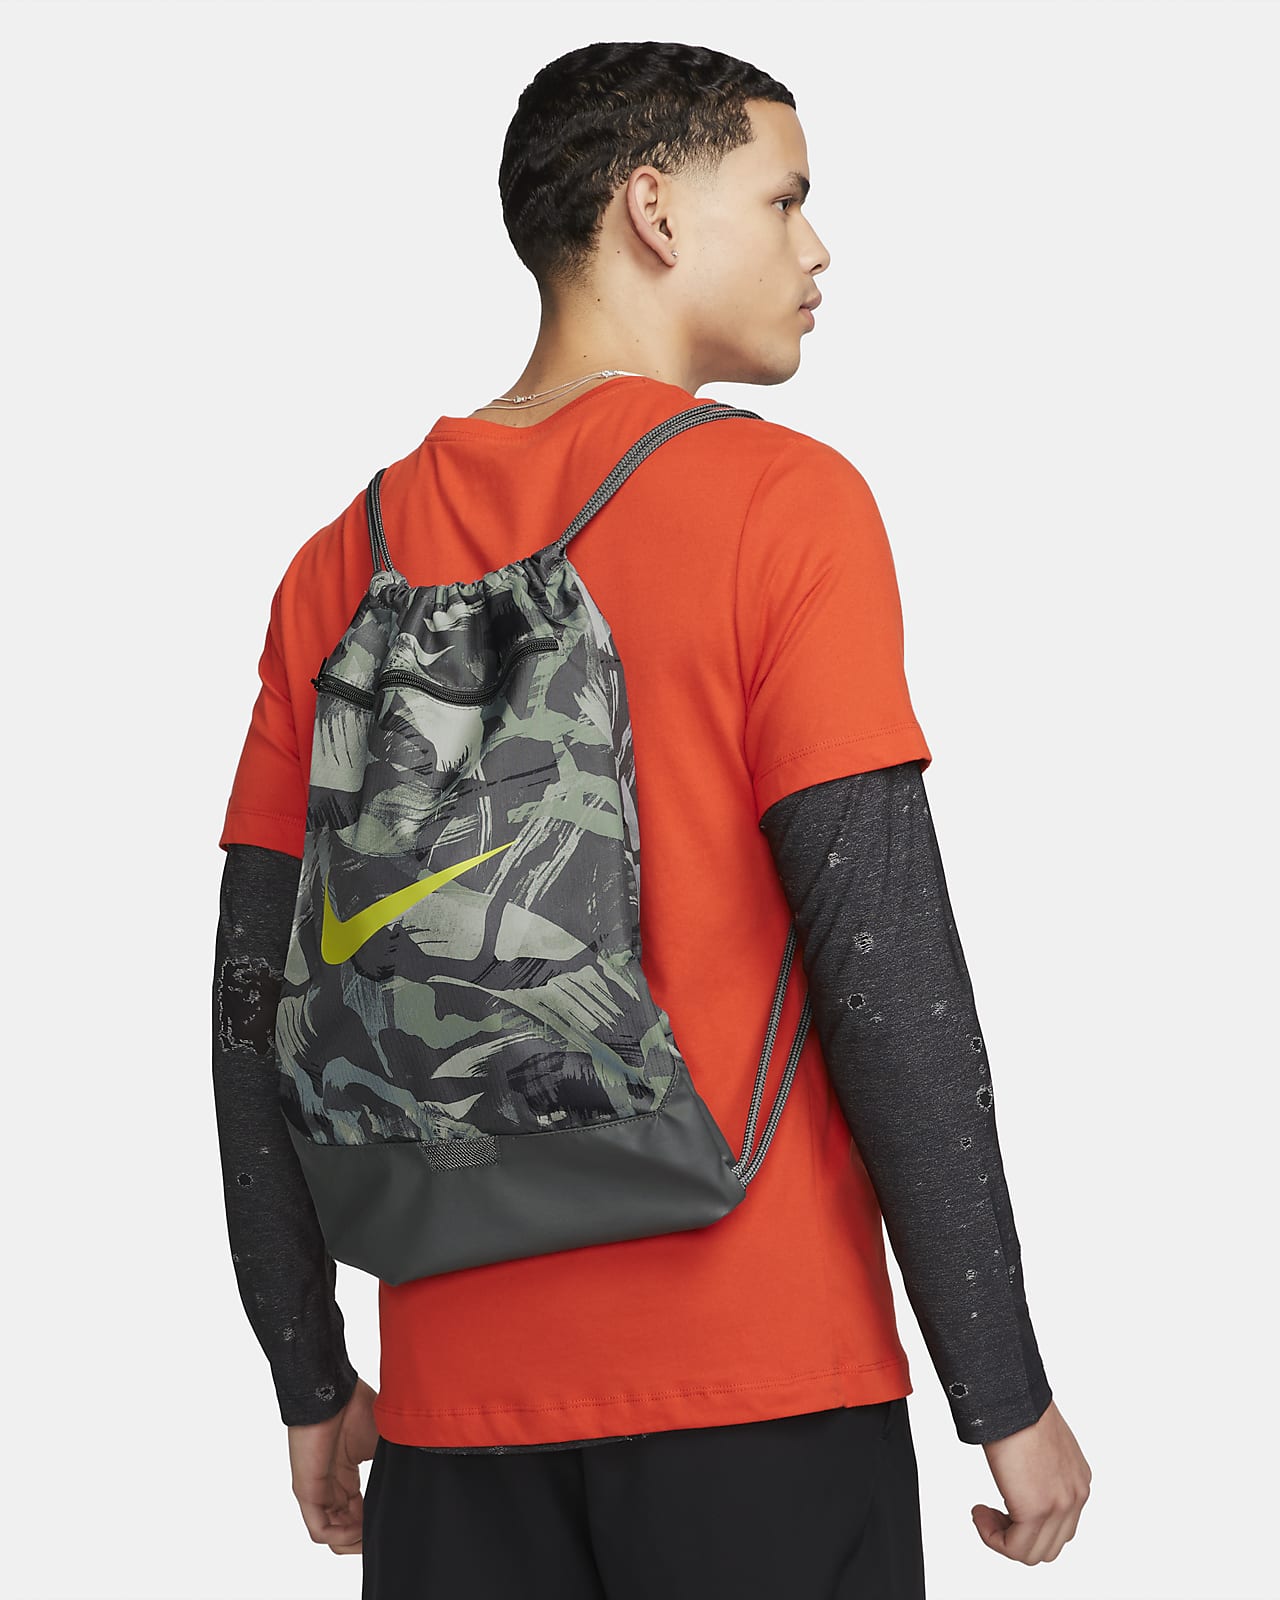 Nike Brasilia Printed Drawstring Bag (18L). Nike